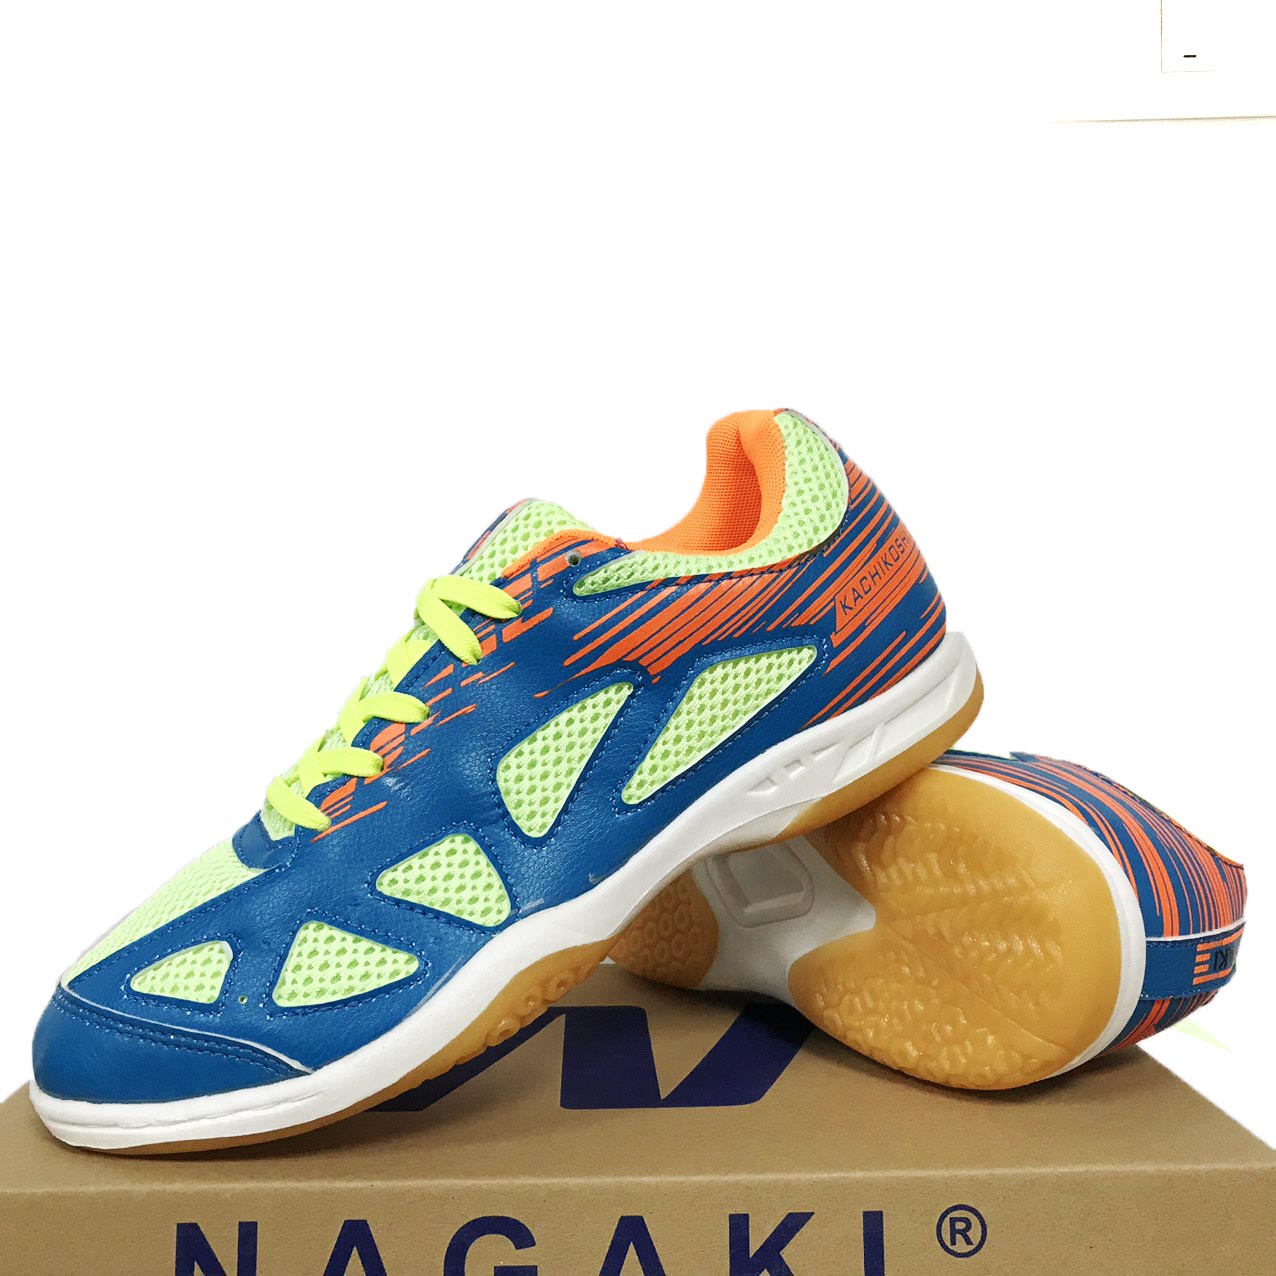 Giày cầu lông, giày bóng chuyền nam nữ Nagaki, Giày cầu lông nam nữ Nagaki thumbnail